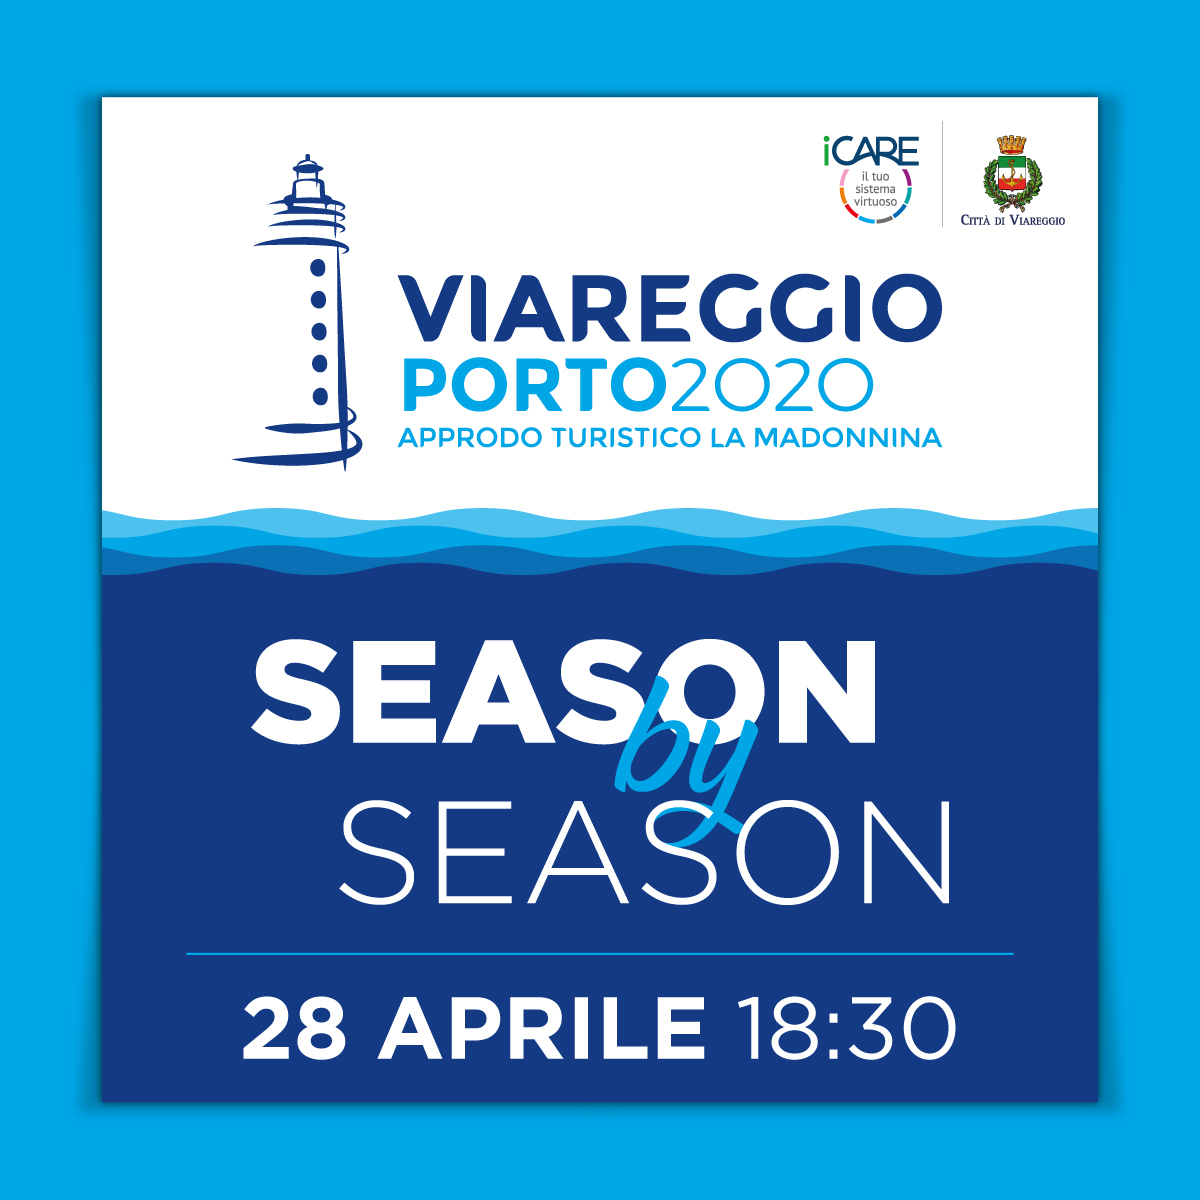 Si rinnova l’appuntamento con il Season By Season alla ViareggioPorto2020